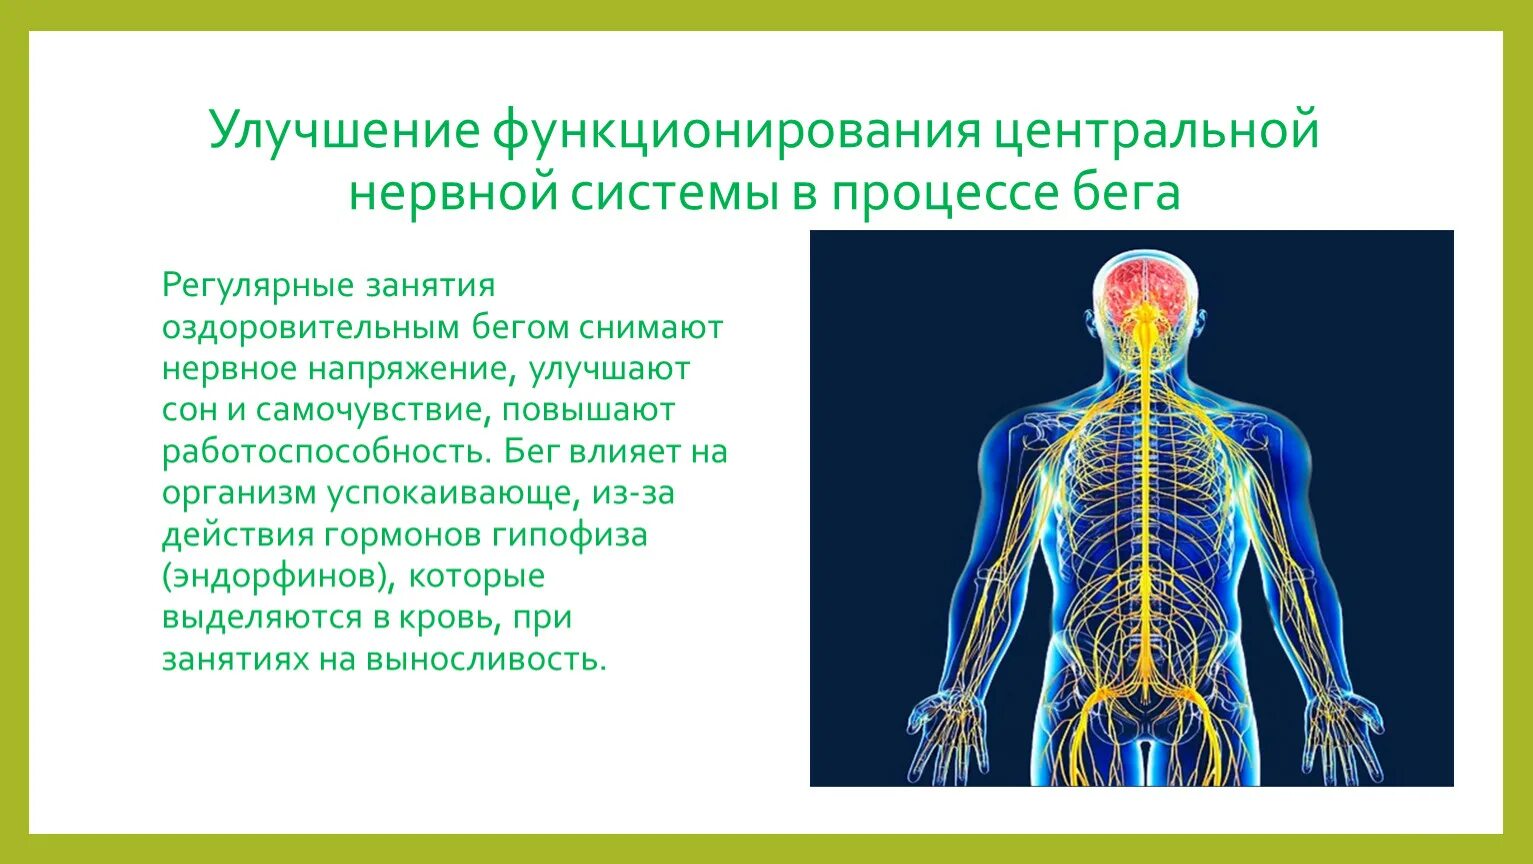 Что является центром нервной системы. Строение нервной системы человека. Функционирование центральной нервной системы. Основные функции центральной нервной системы человека. Особенности функционирования нервной системы.